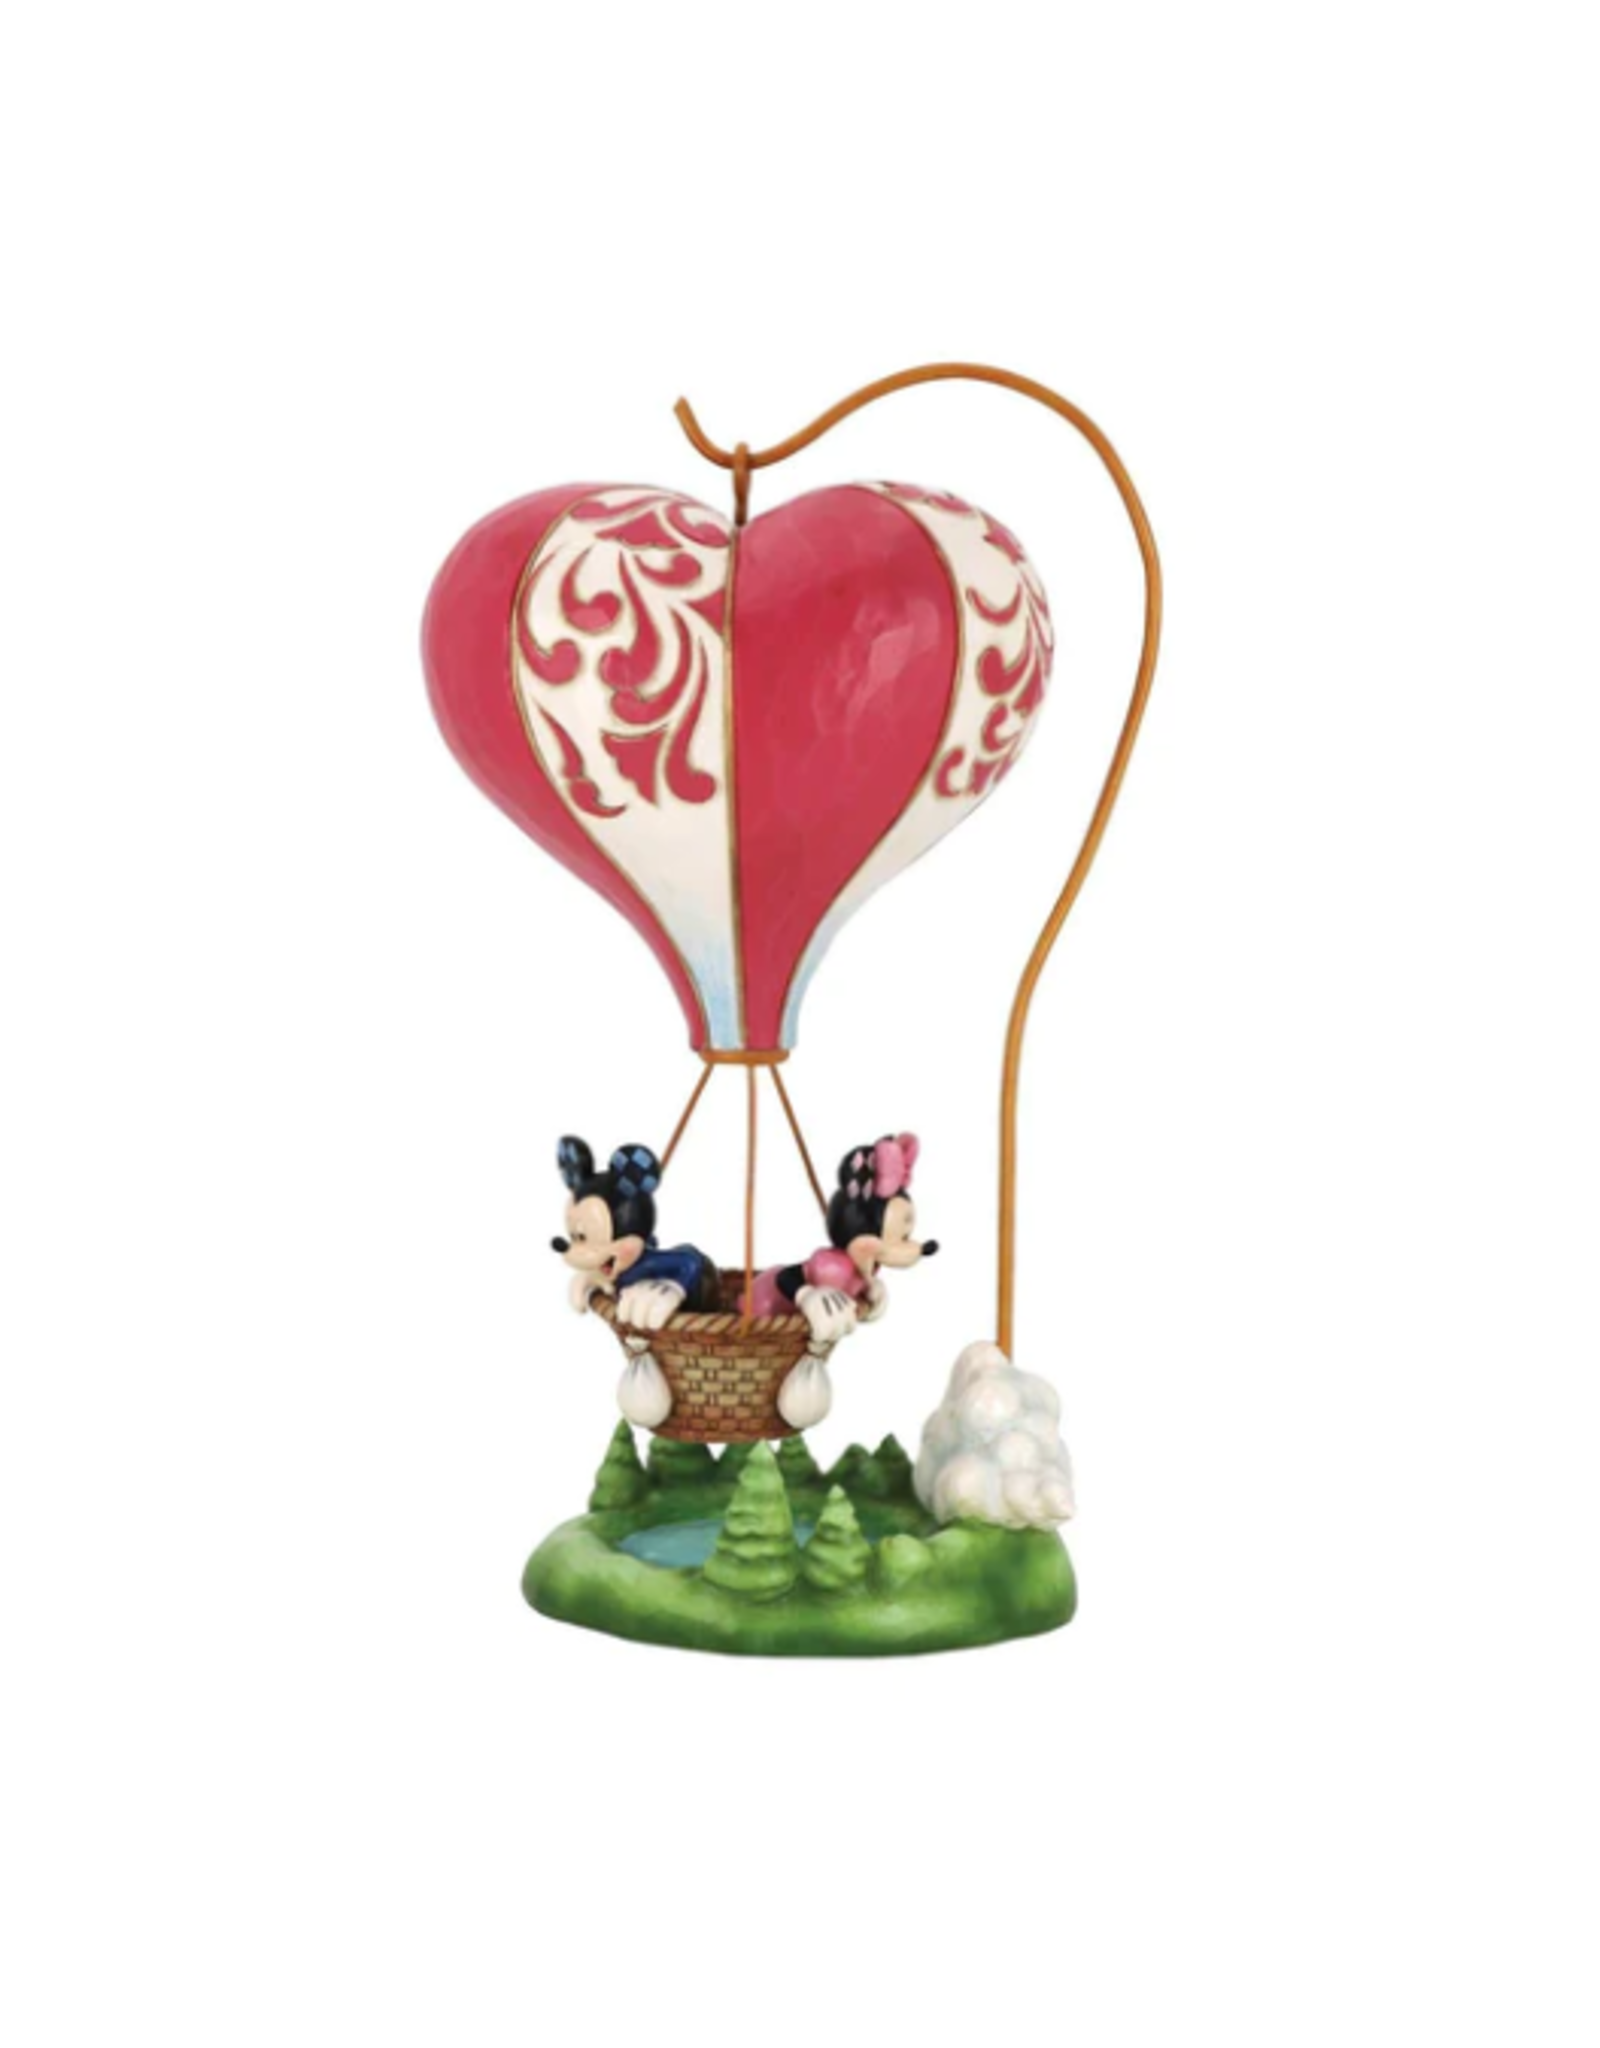 Jim Shore Mickey & Minnie Heart-Air Balloon